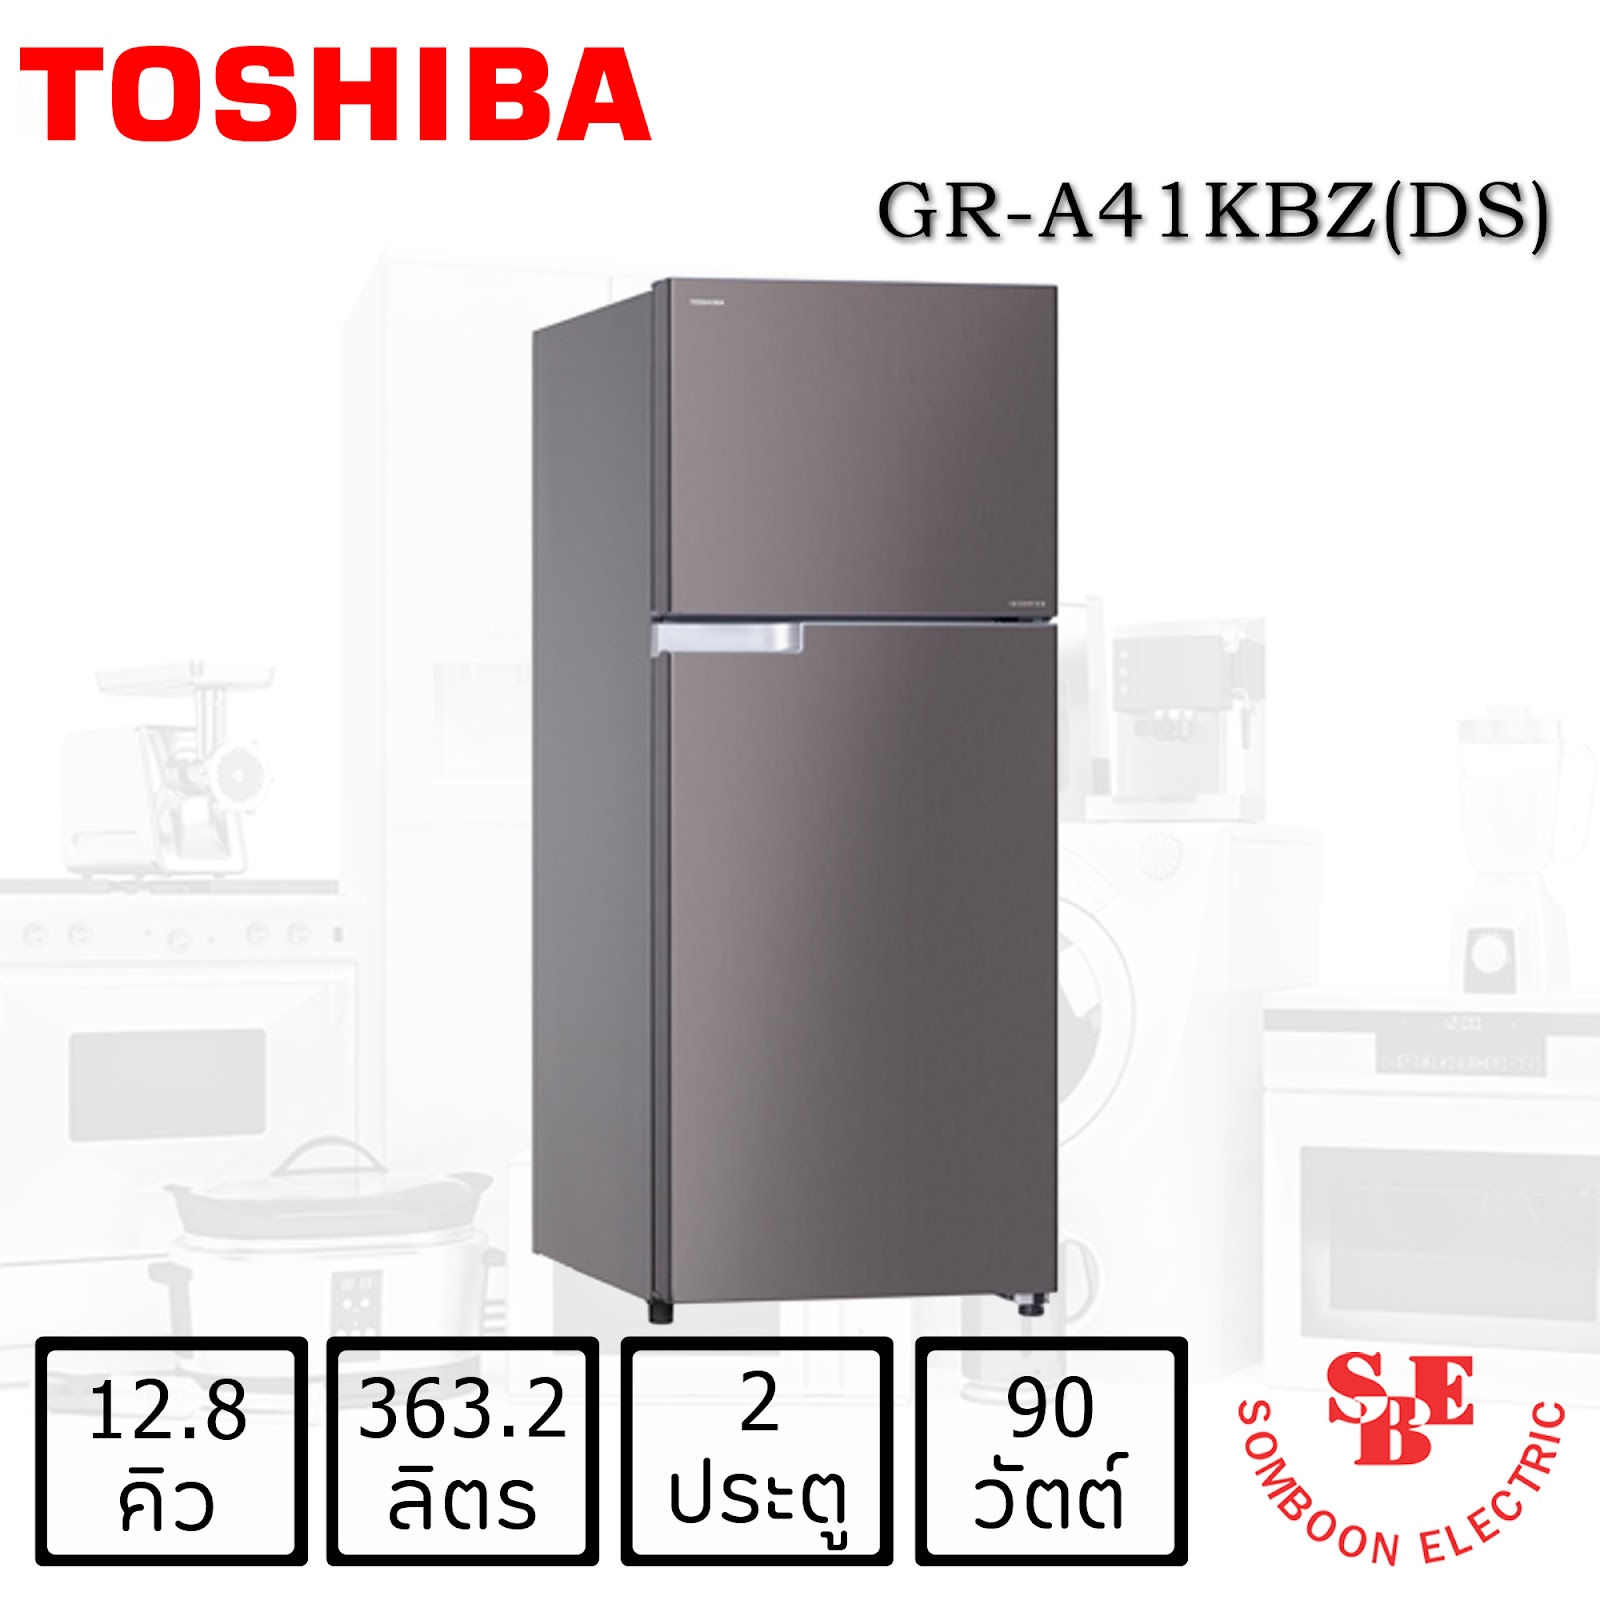 รวมตู้เย็น 5 รุ่นคุณภาพ ดีไซน์สวนจากแบรนด์ Toshiba  ที่น่าใช้งานแห่งปี 2022 ! 2